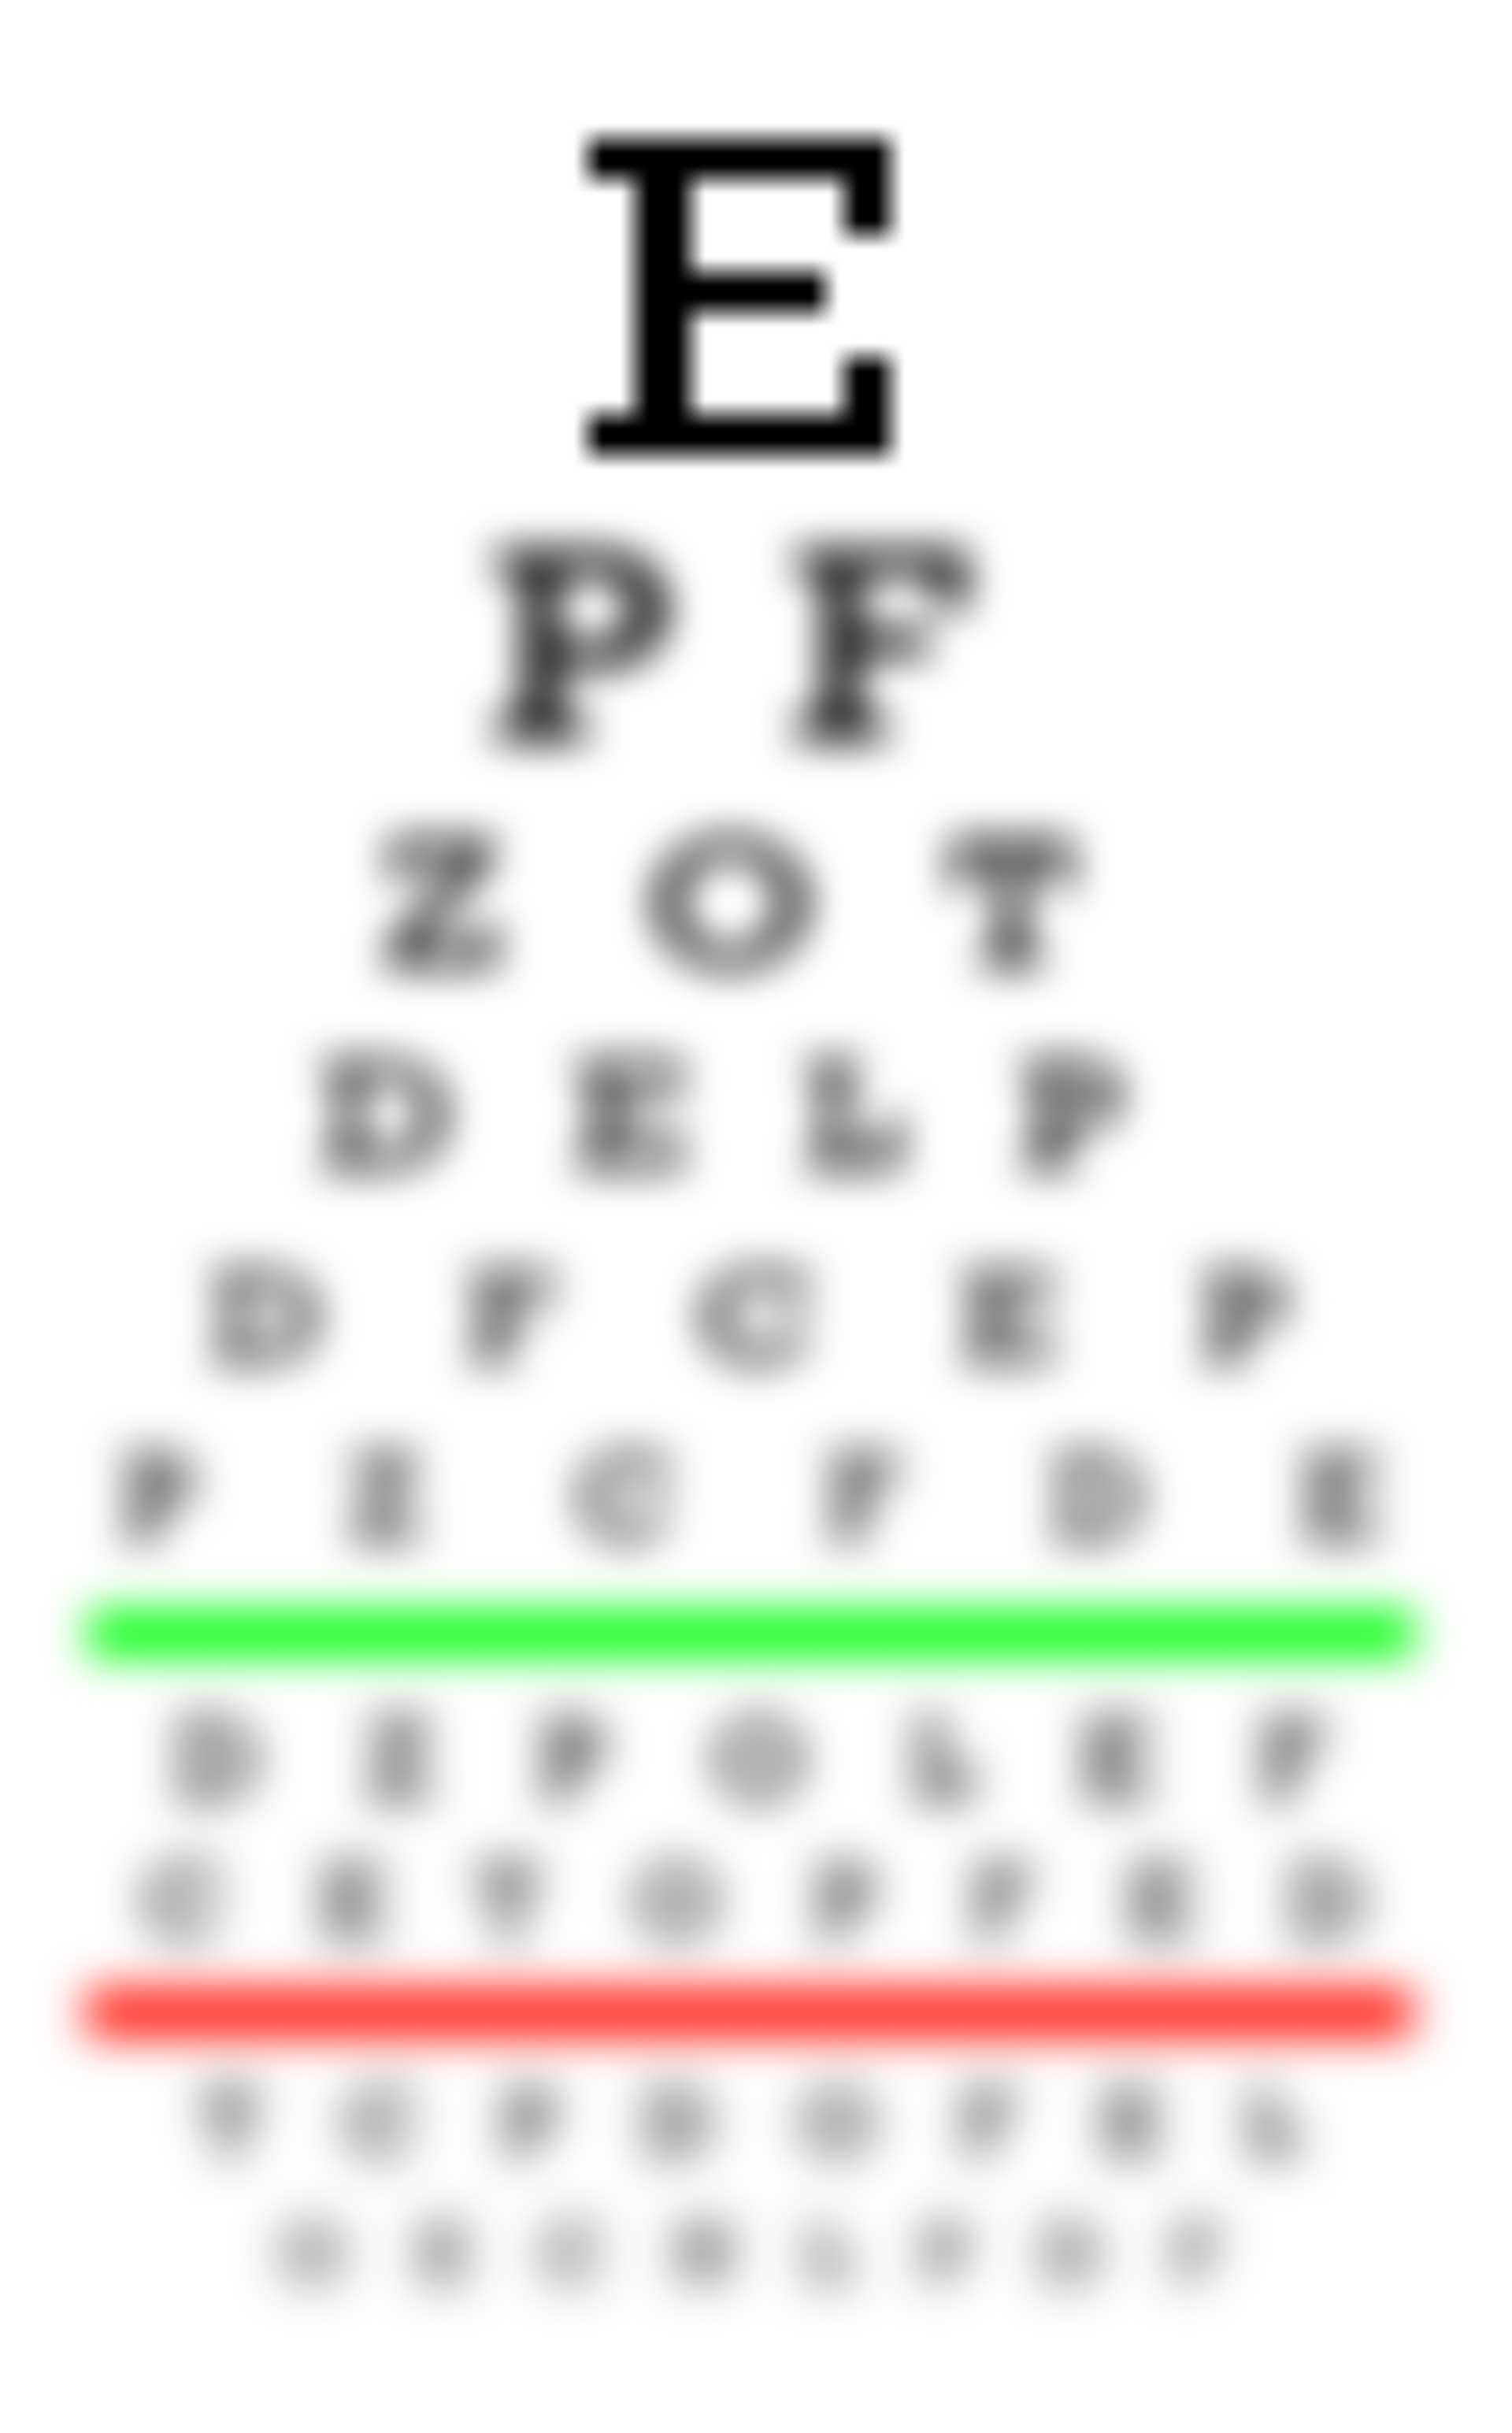 hyperopia és myopia kontraszt táblázat éljen egészségesen a látástól